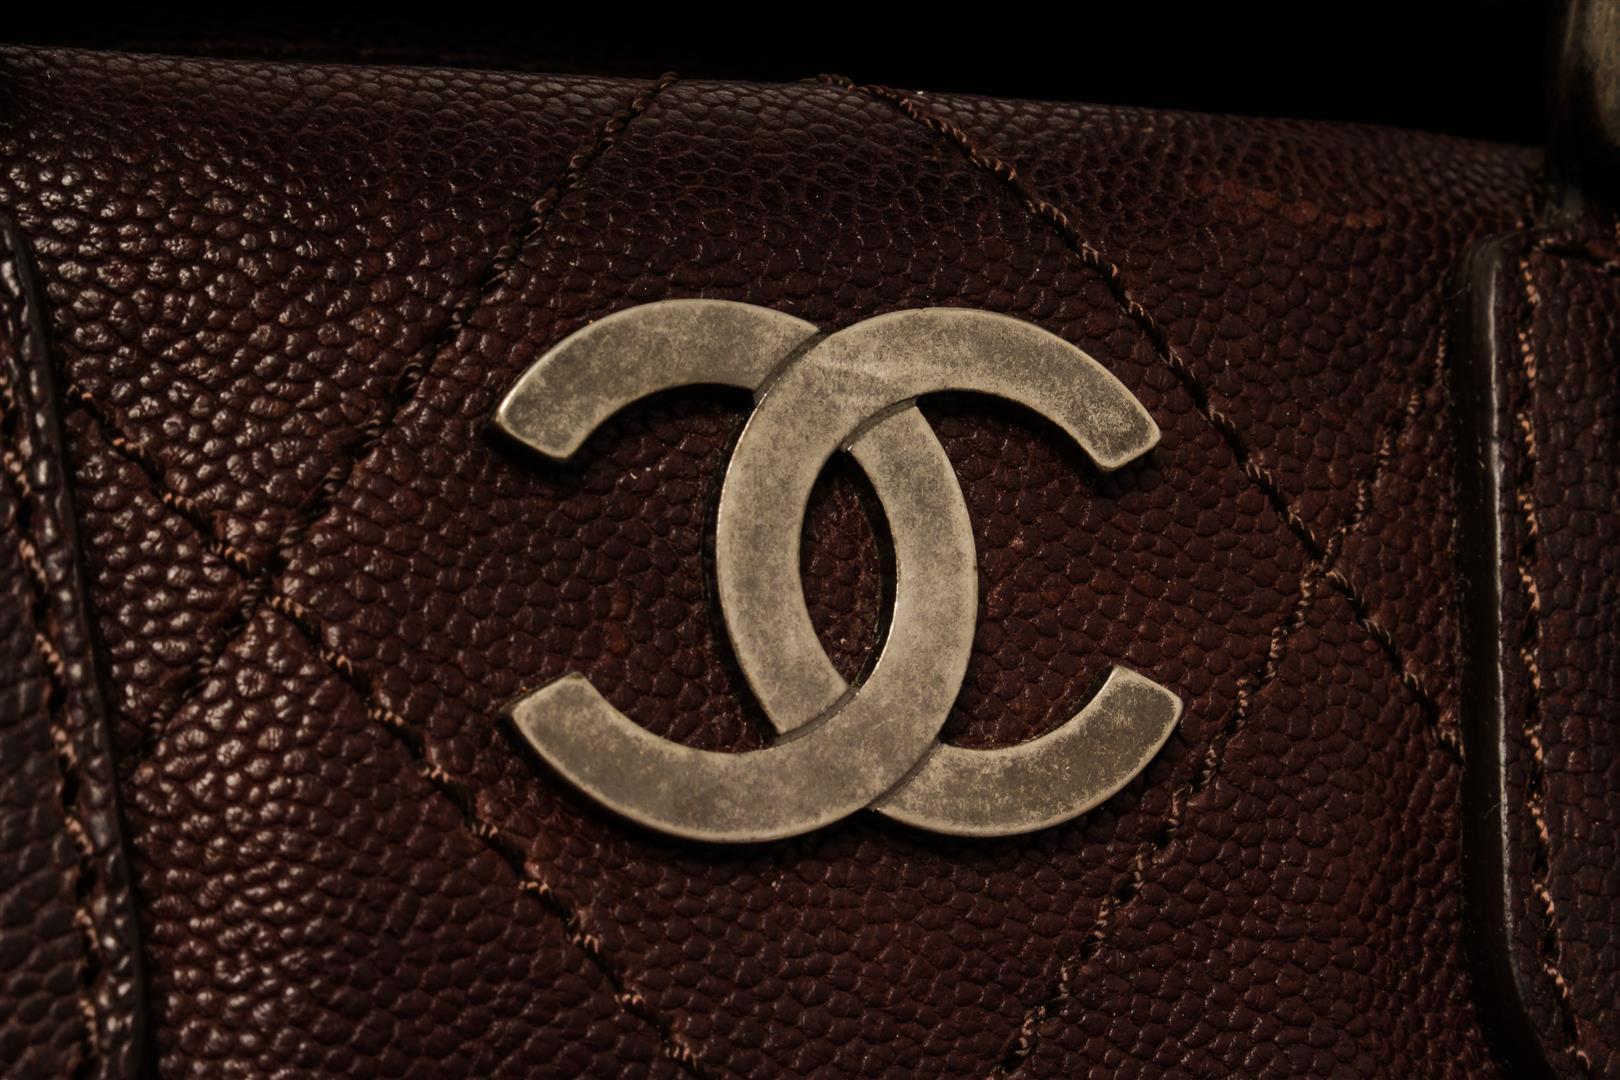 Chanel Brown Leather CC Handbag